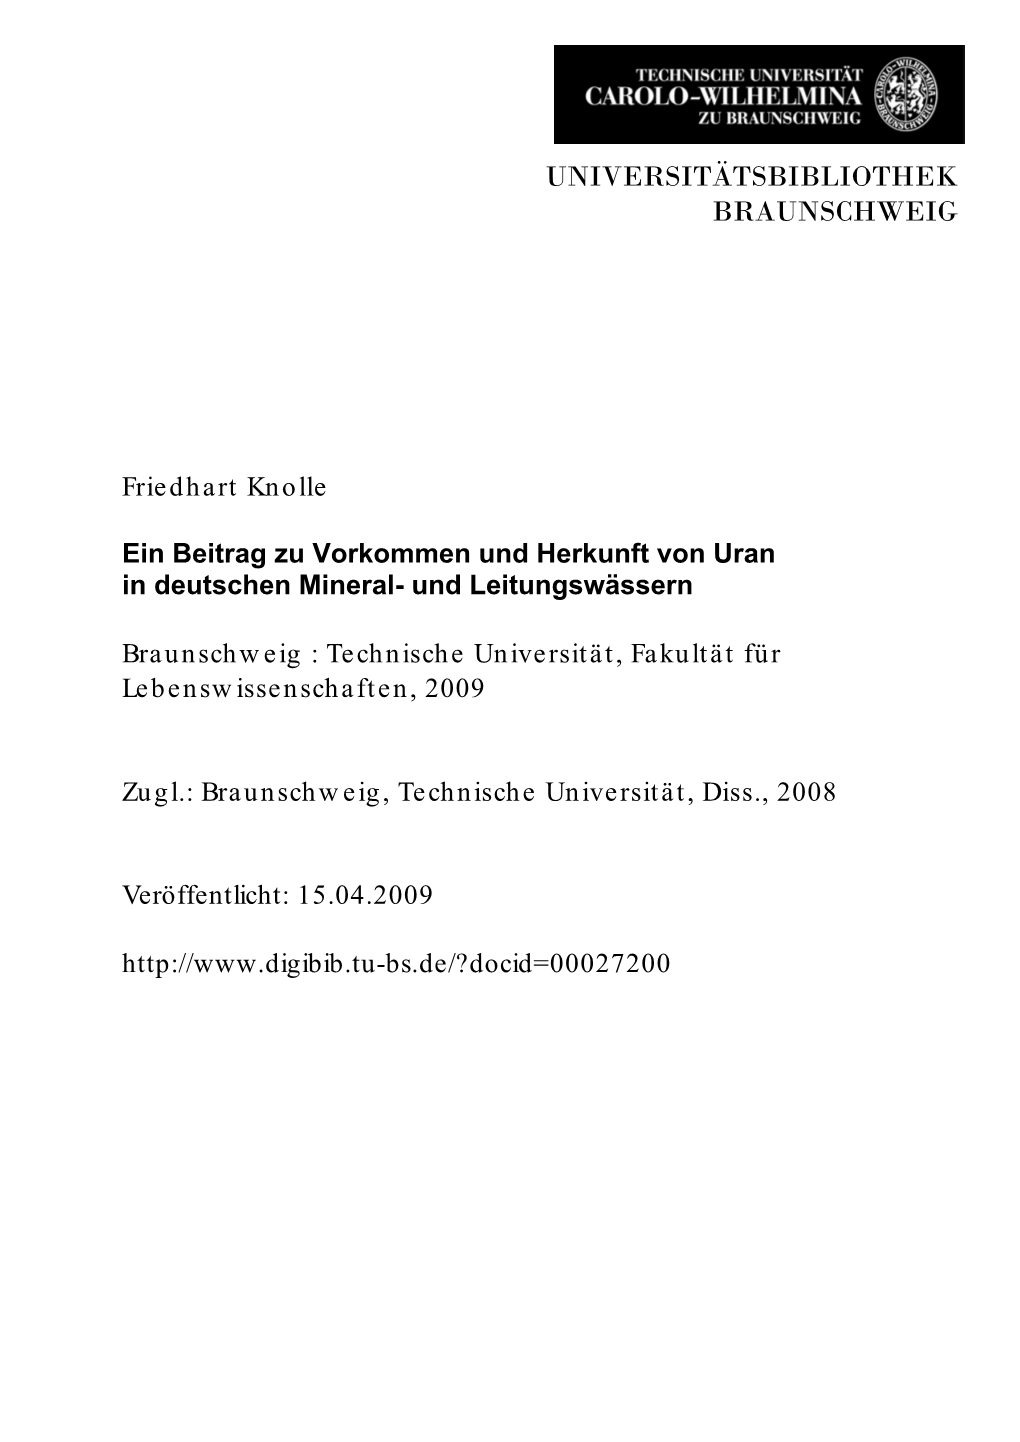 Beitrag Zu Vorkommen Und Herkunft Von Uran in Deutschen Mineral- Und Leitungswässern